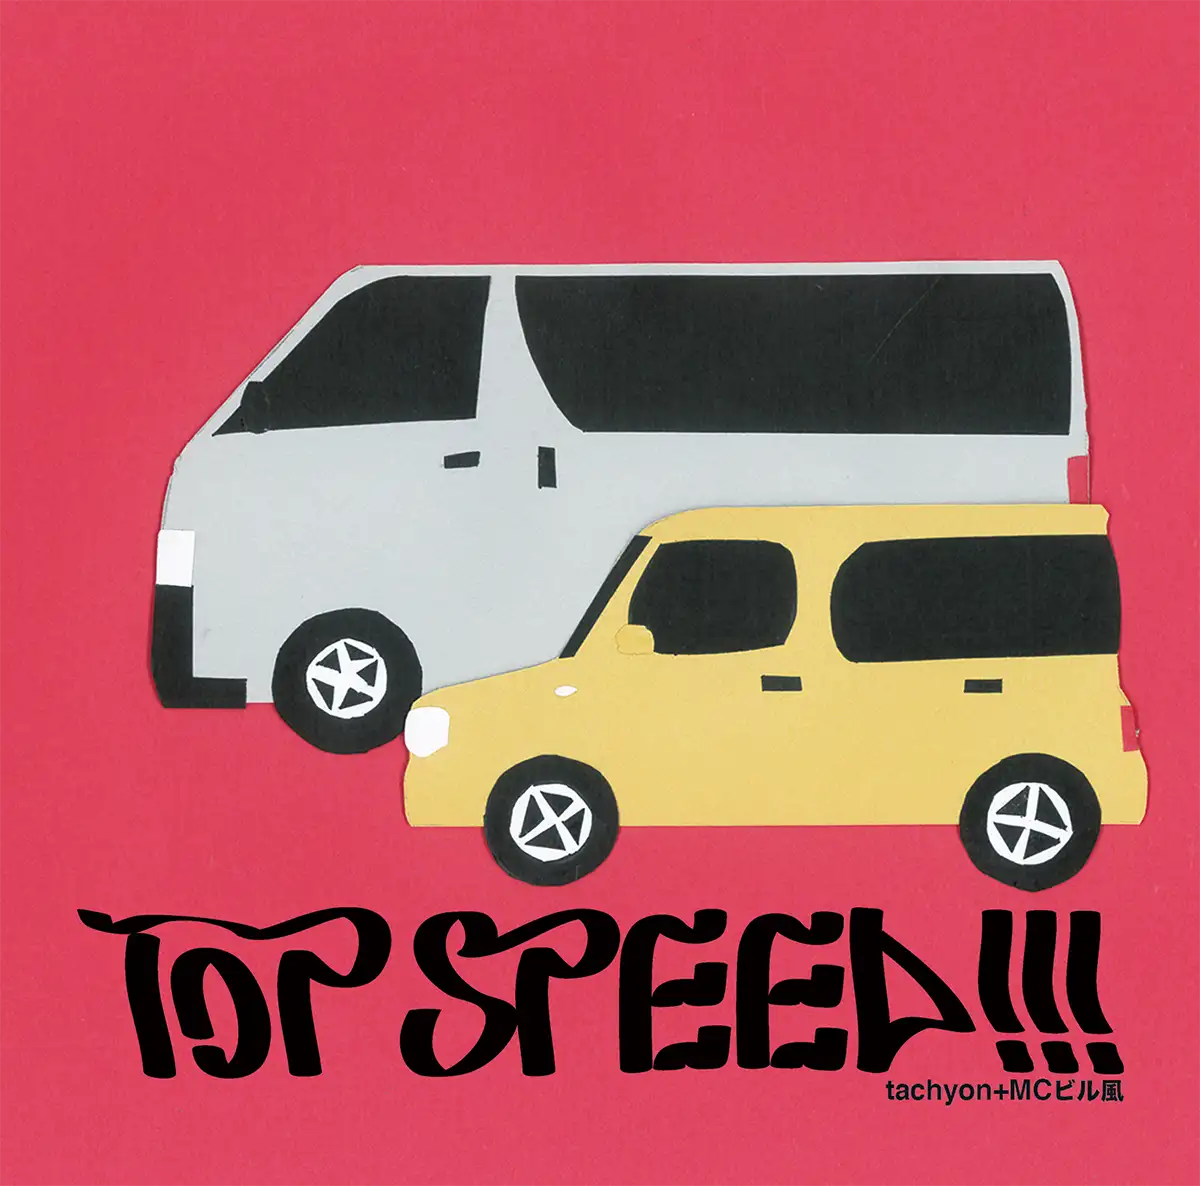 『TOP SPEED!!!』tachyon+MCビル風アートワーク